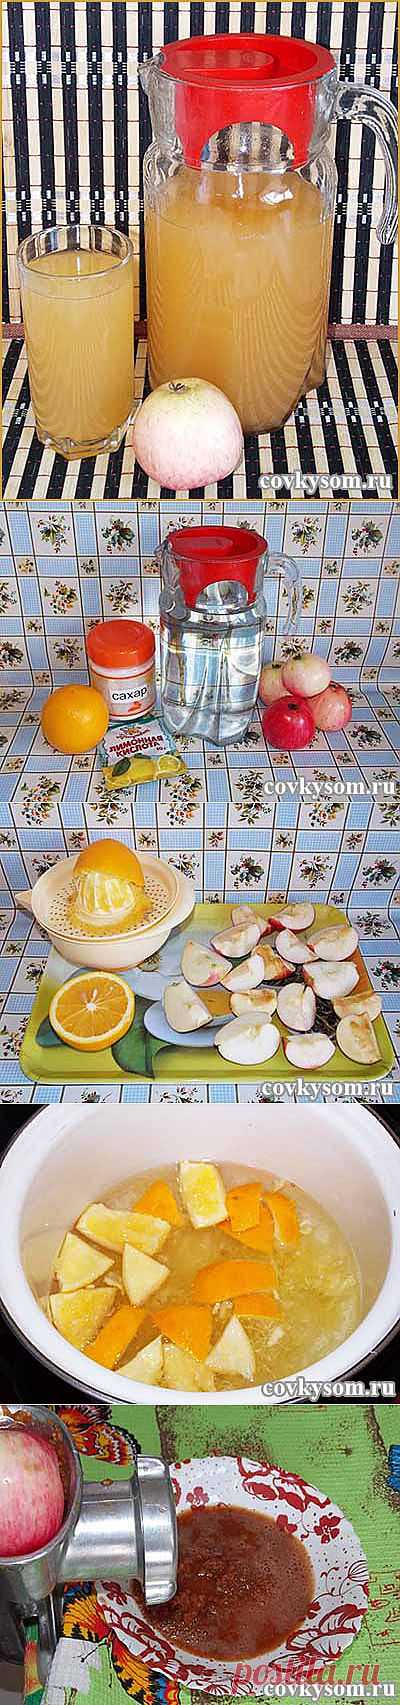 Домашний лимонад из яблок | Со вкусом